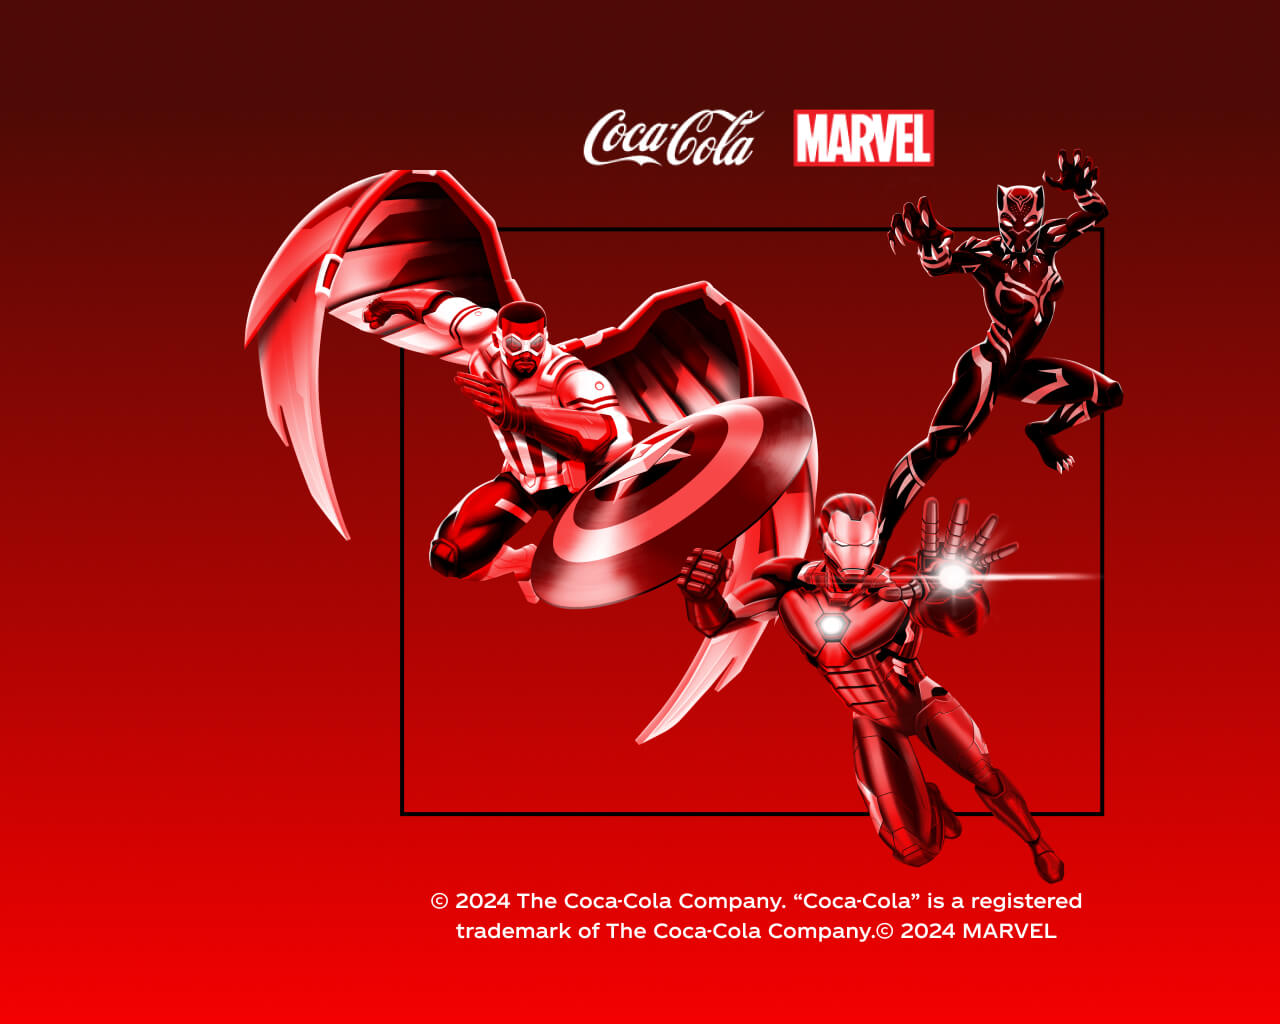 Iron-Man, Capitán América y Pantera Negra en posición de ataque sobre fondo rojo.